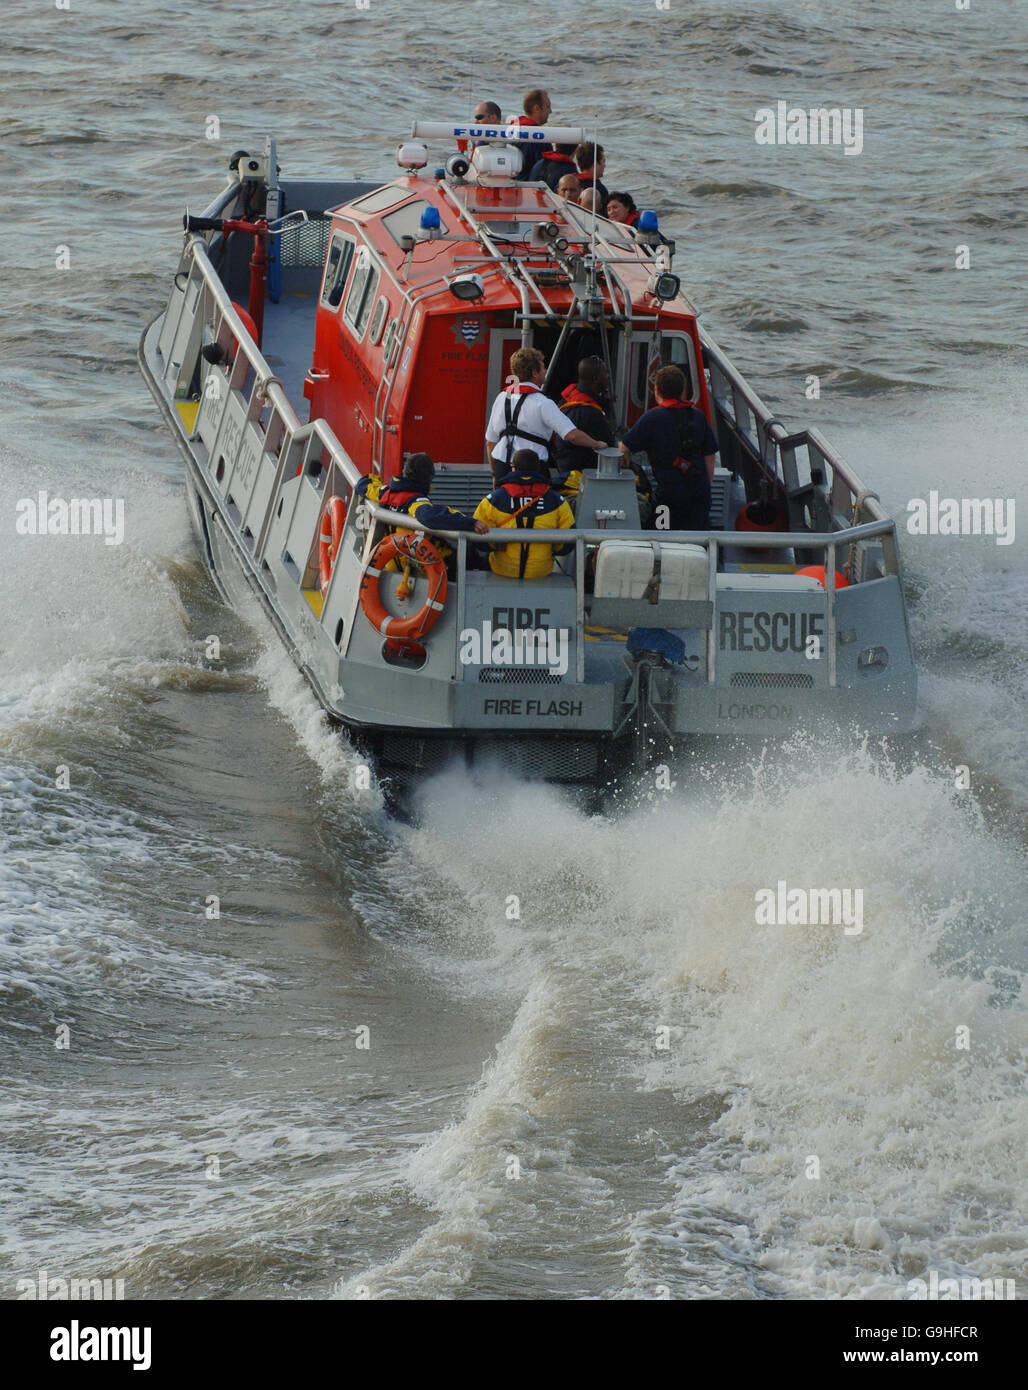 Tamigi Rescue Boat. PREMERE ASSOCIAZIONE foto. Data immagine: Giovedì 26 2006 settembre. Vedere la storia di PA. Il credito fotografico dovrebbe essere Fiona Hanson/PA Foto Stock